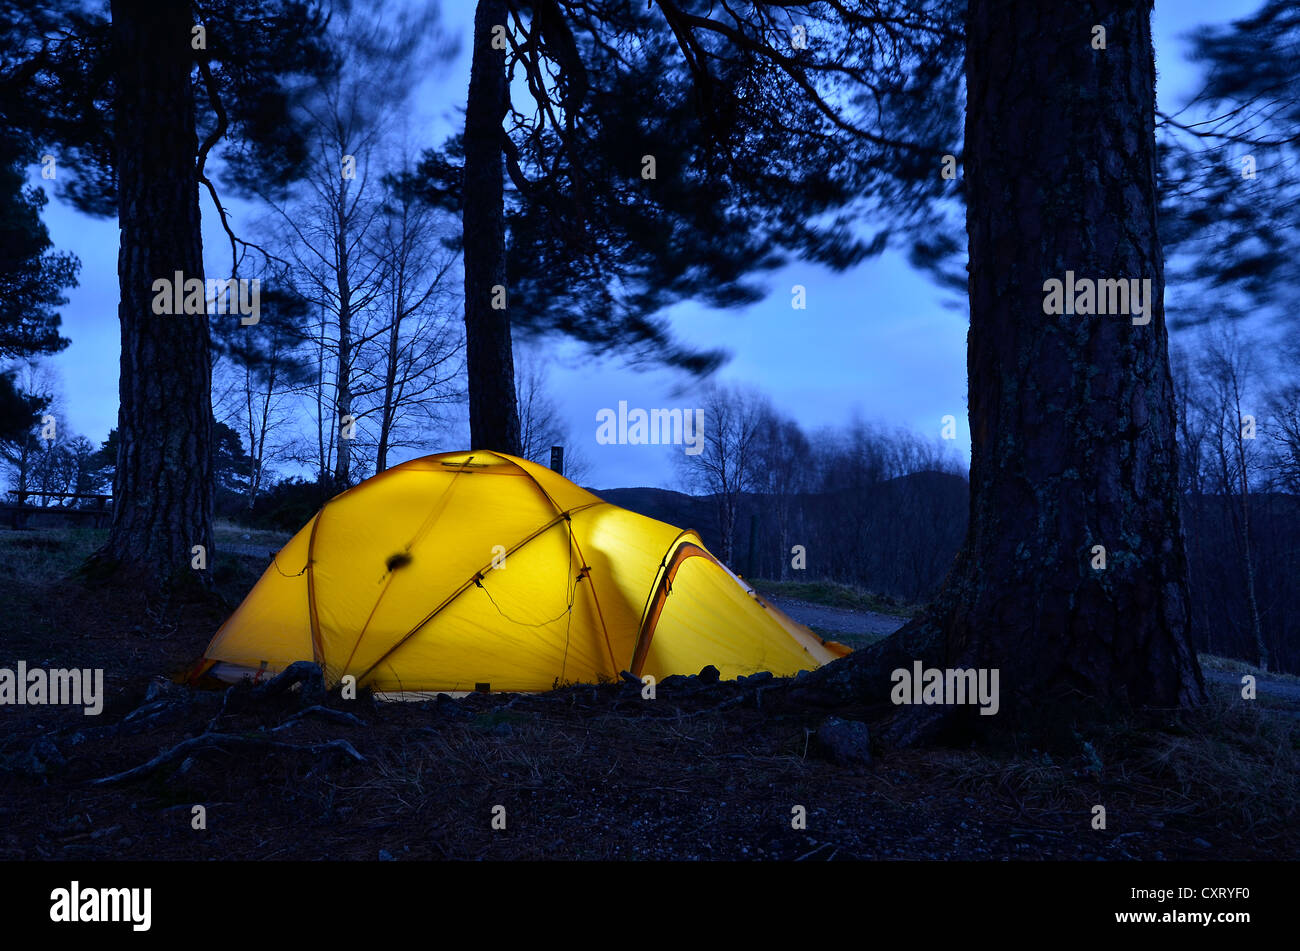 Leuchtende gelbe Expedition Zelt, trekking Zelt eingerichtet unter großen  Bäumen, Caledonian Pines, Abend-Stimmung, Glen Affric Stockfotografie -  Alamy